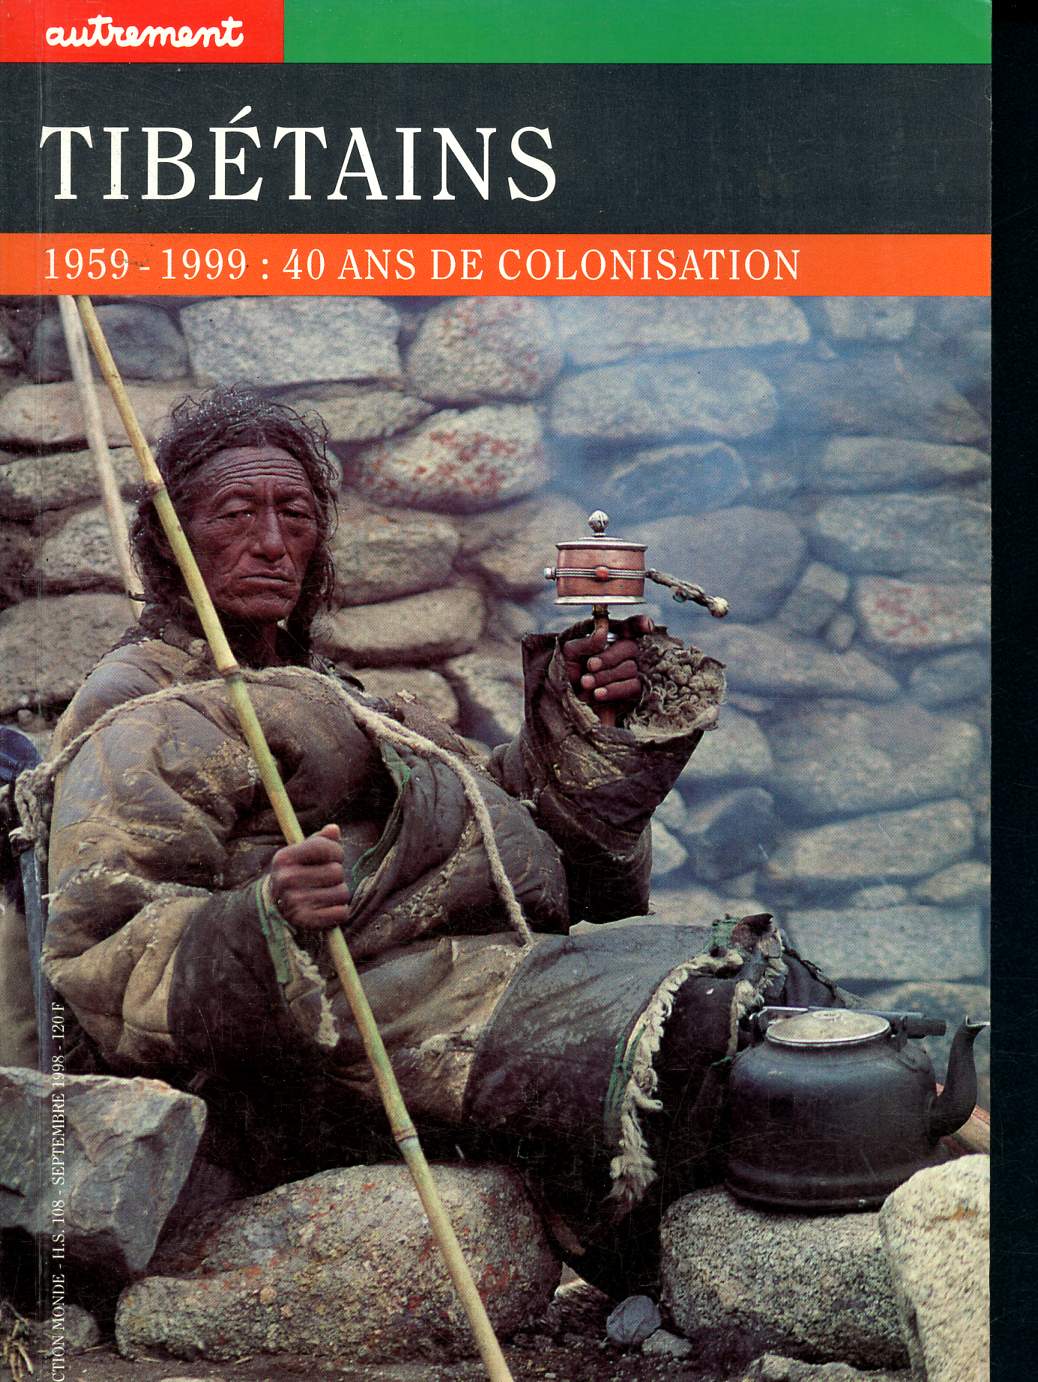 Tibtains - 1959-1999 - 40 ans de colonisation - collection monde Hors srie N108 septembre 1998 - plerinages et montagnes sacres - lahsa, la ville illisible, le nationalisme - le bn, l'autre religion- l'identit bnpo aujourd'hui...